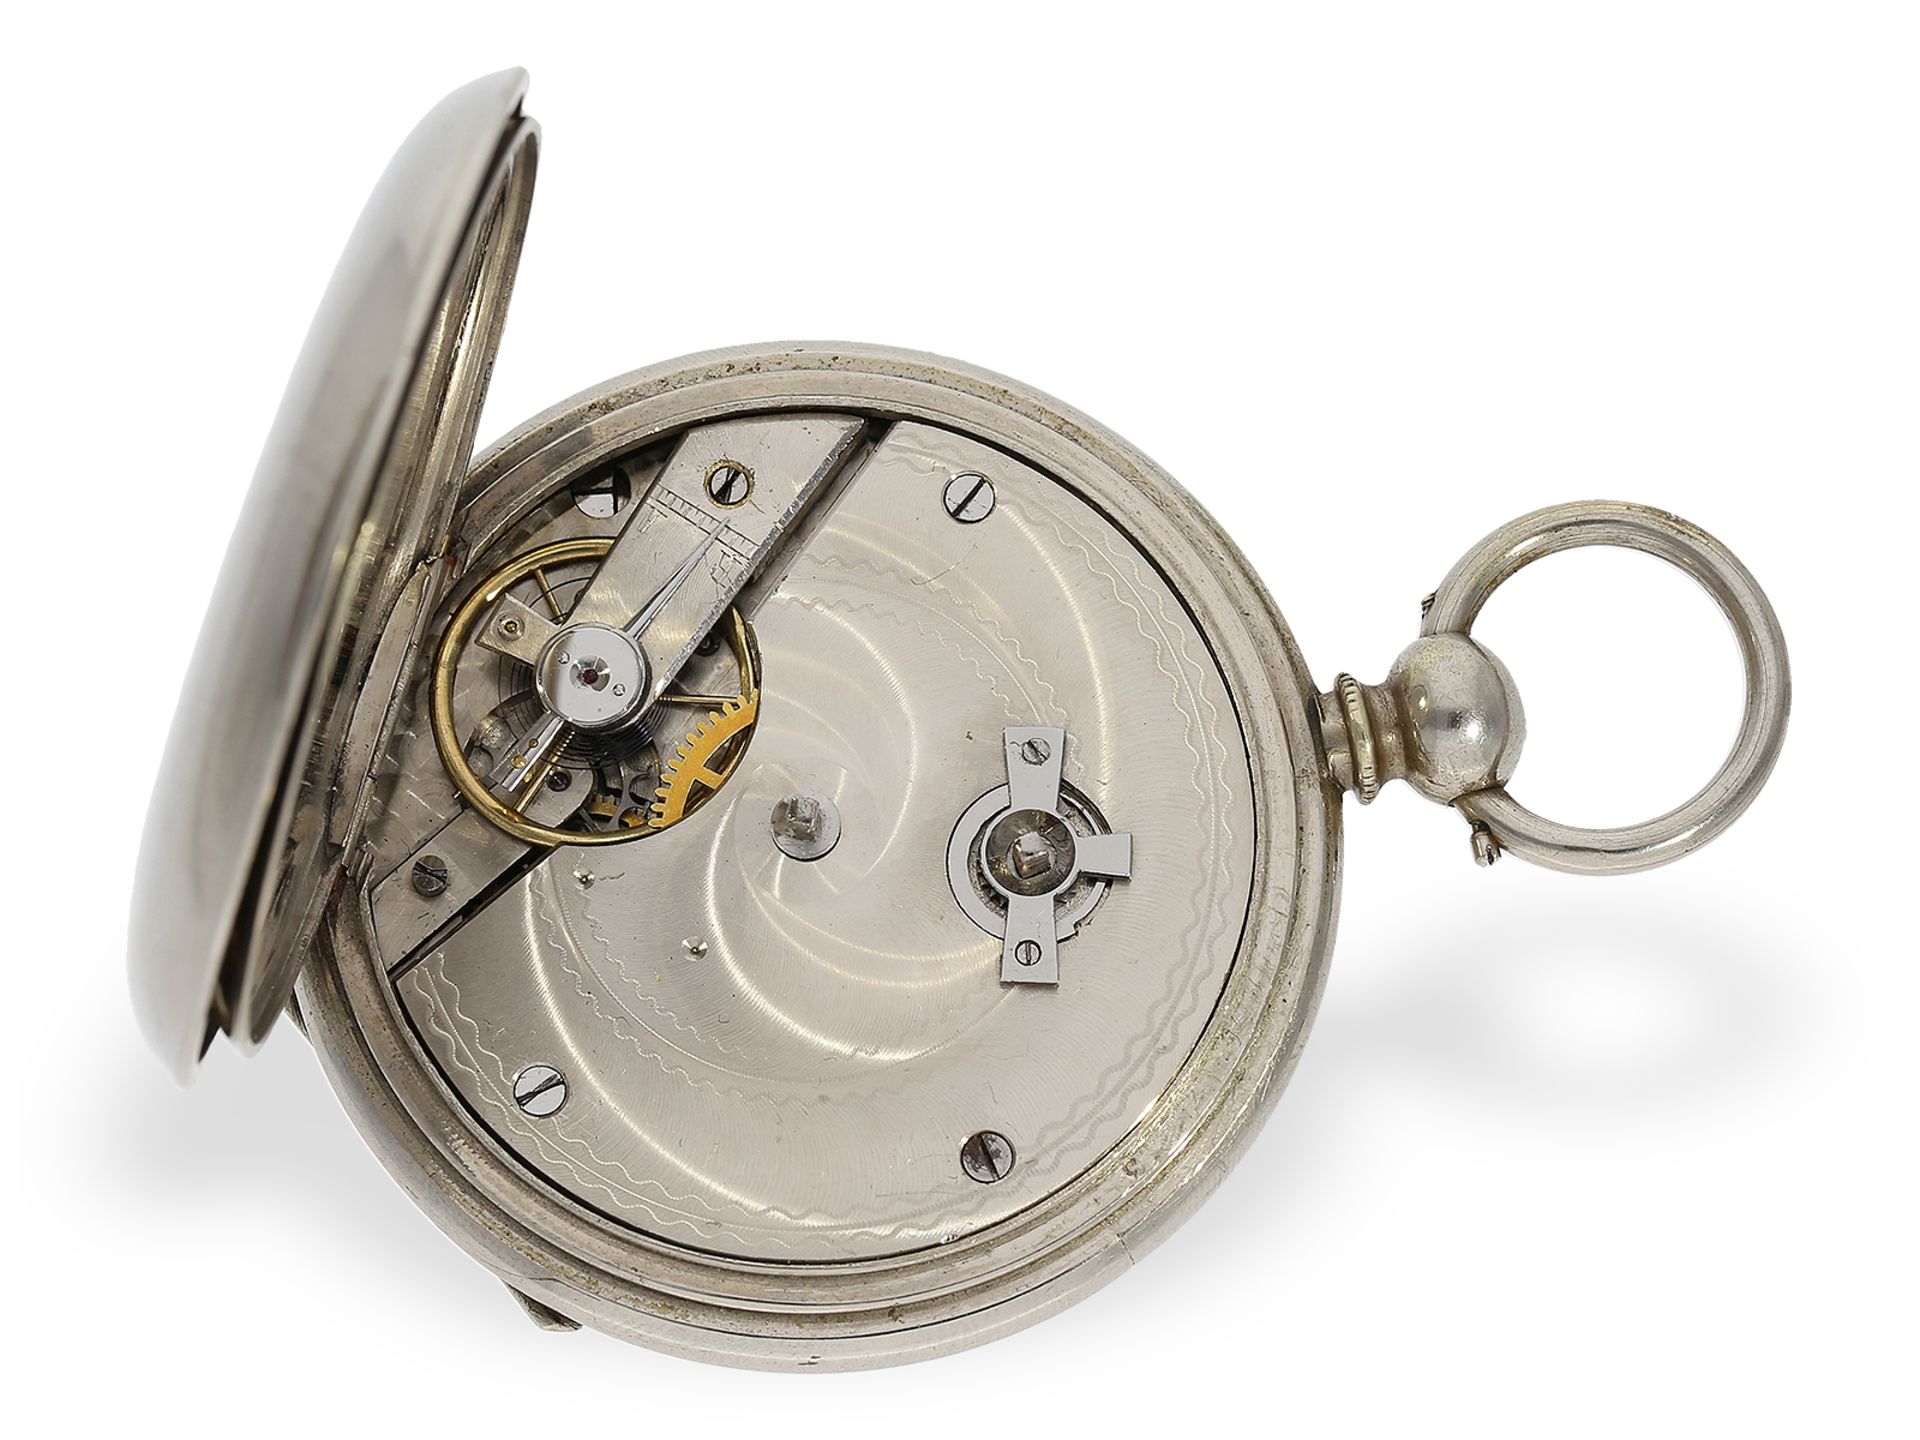 Extrem seltene Taschenuhr mit Dezimalzeit "Decimale Metrique", bez. "Moll Ingenieur Bienne", ca.1850 - Bild 2 aus 5